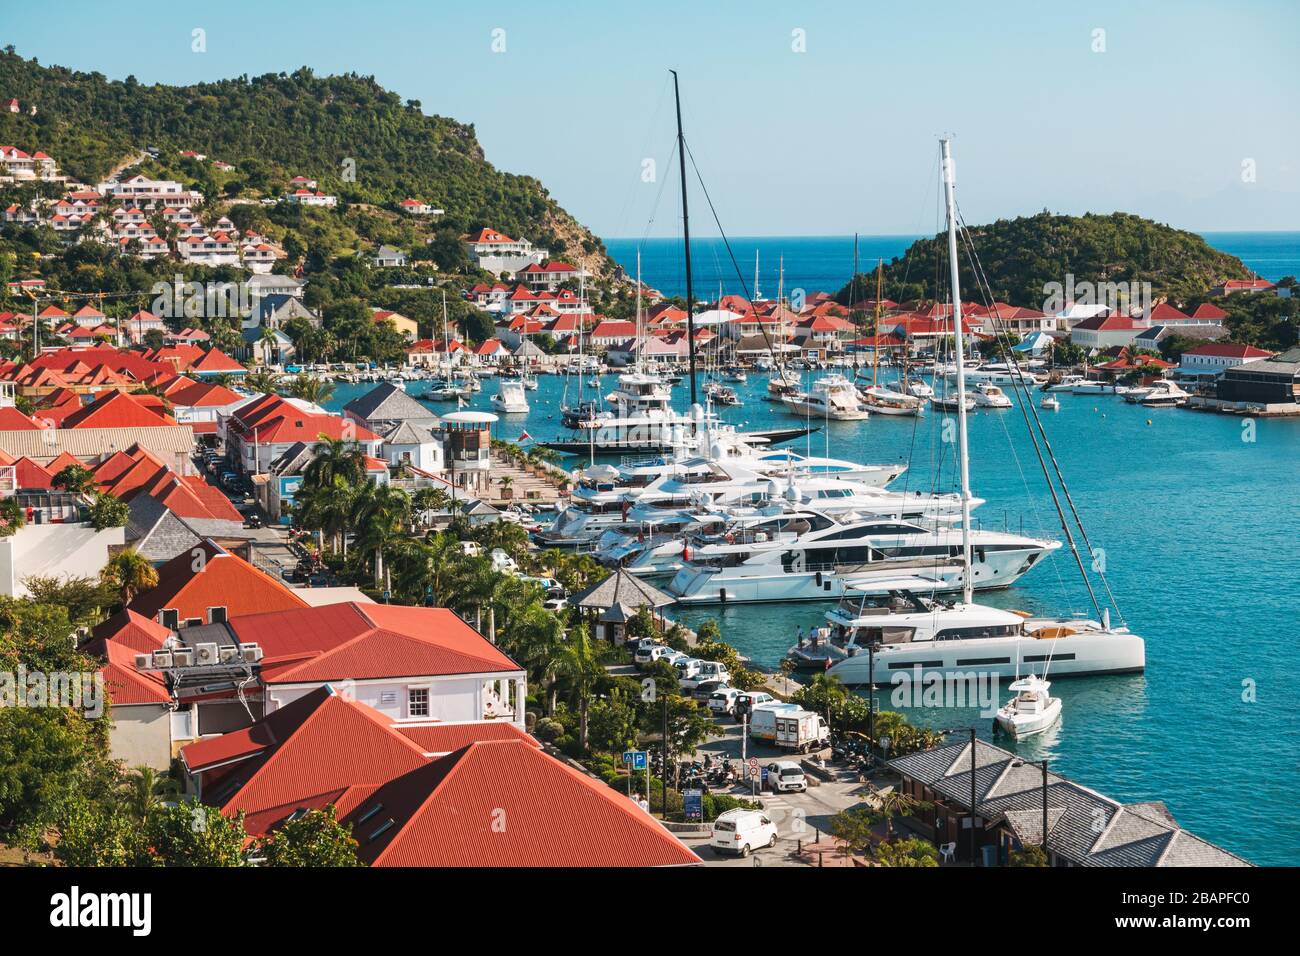 Yachts privés garés par les toits rouges distincts des maisons et des magasins dans la ville portuaire bien entretenue de Gustavia, capitale de Saint Barthélemy Banque D'Images